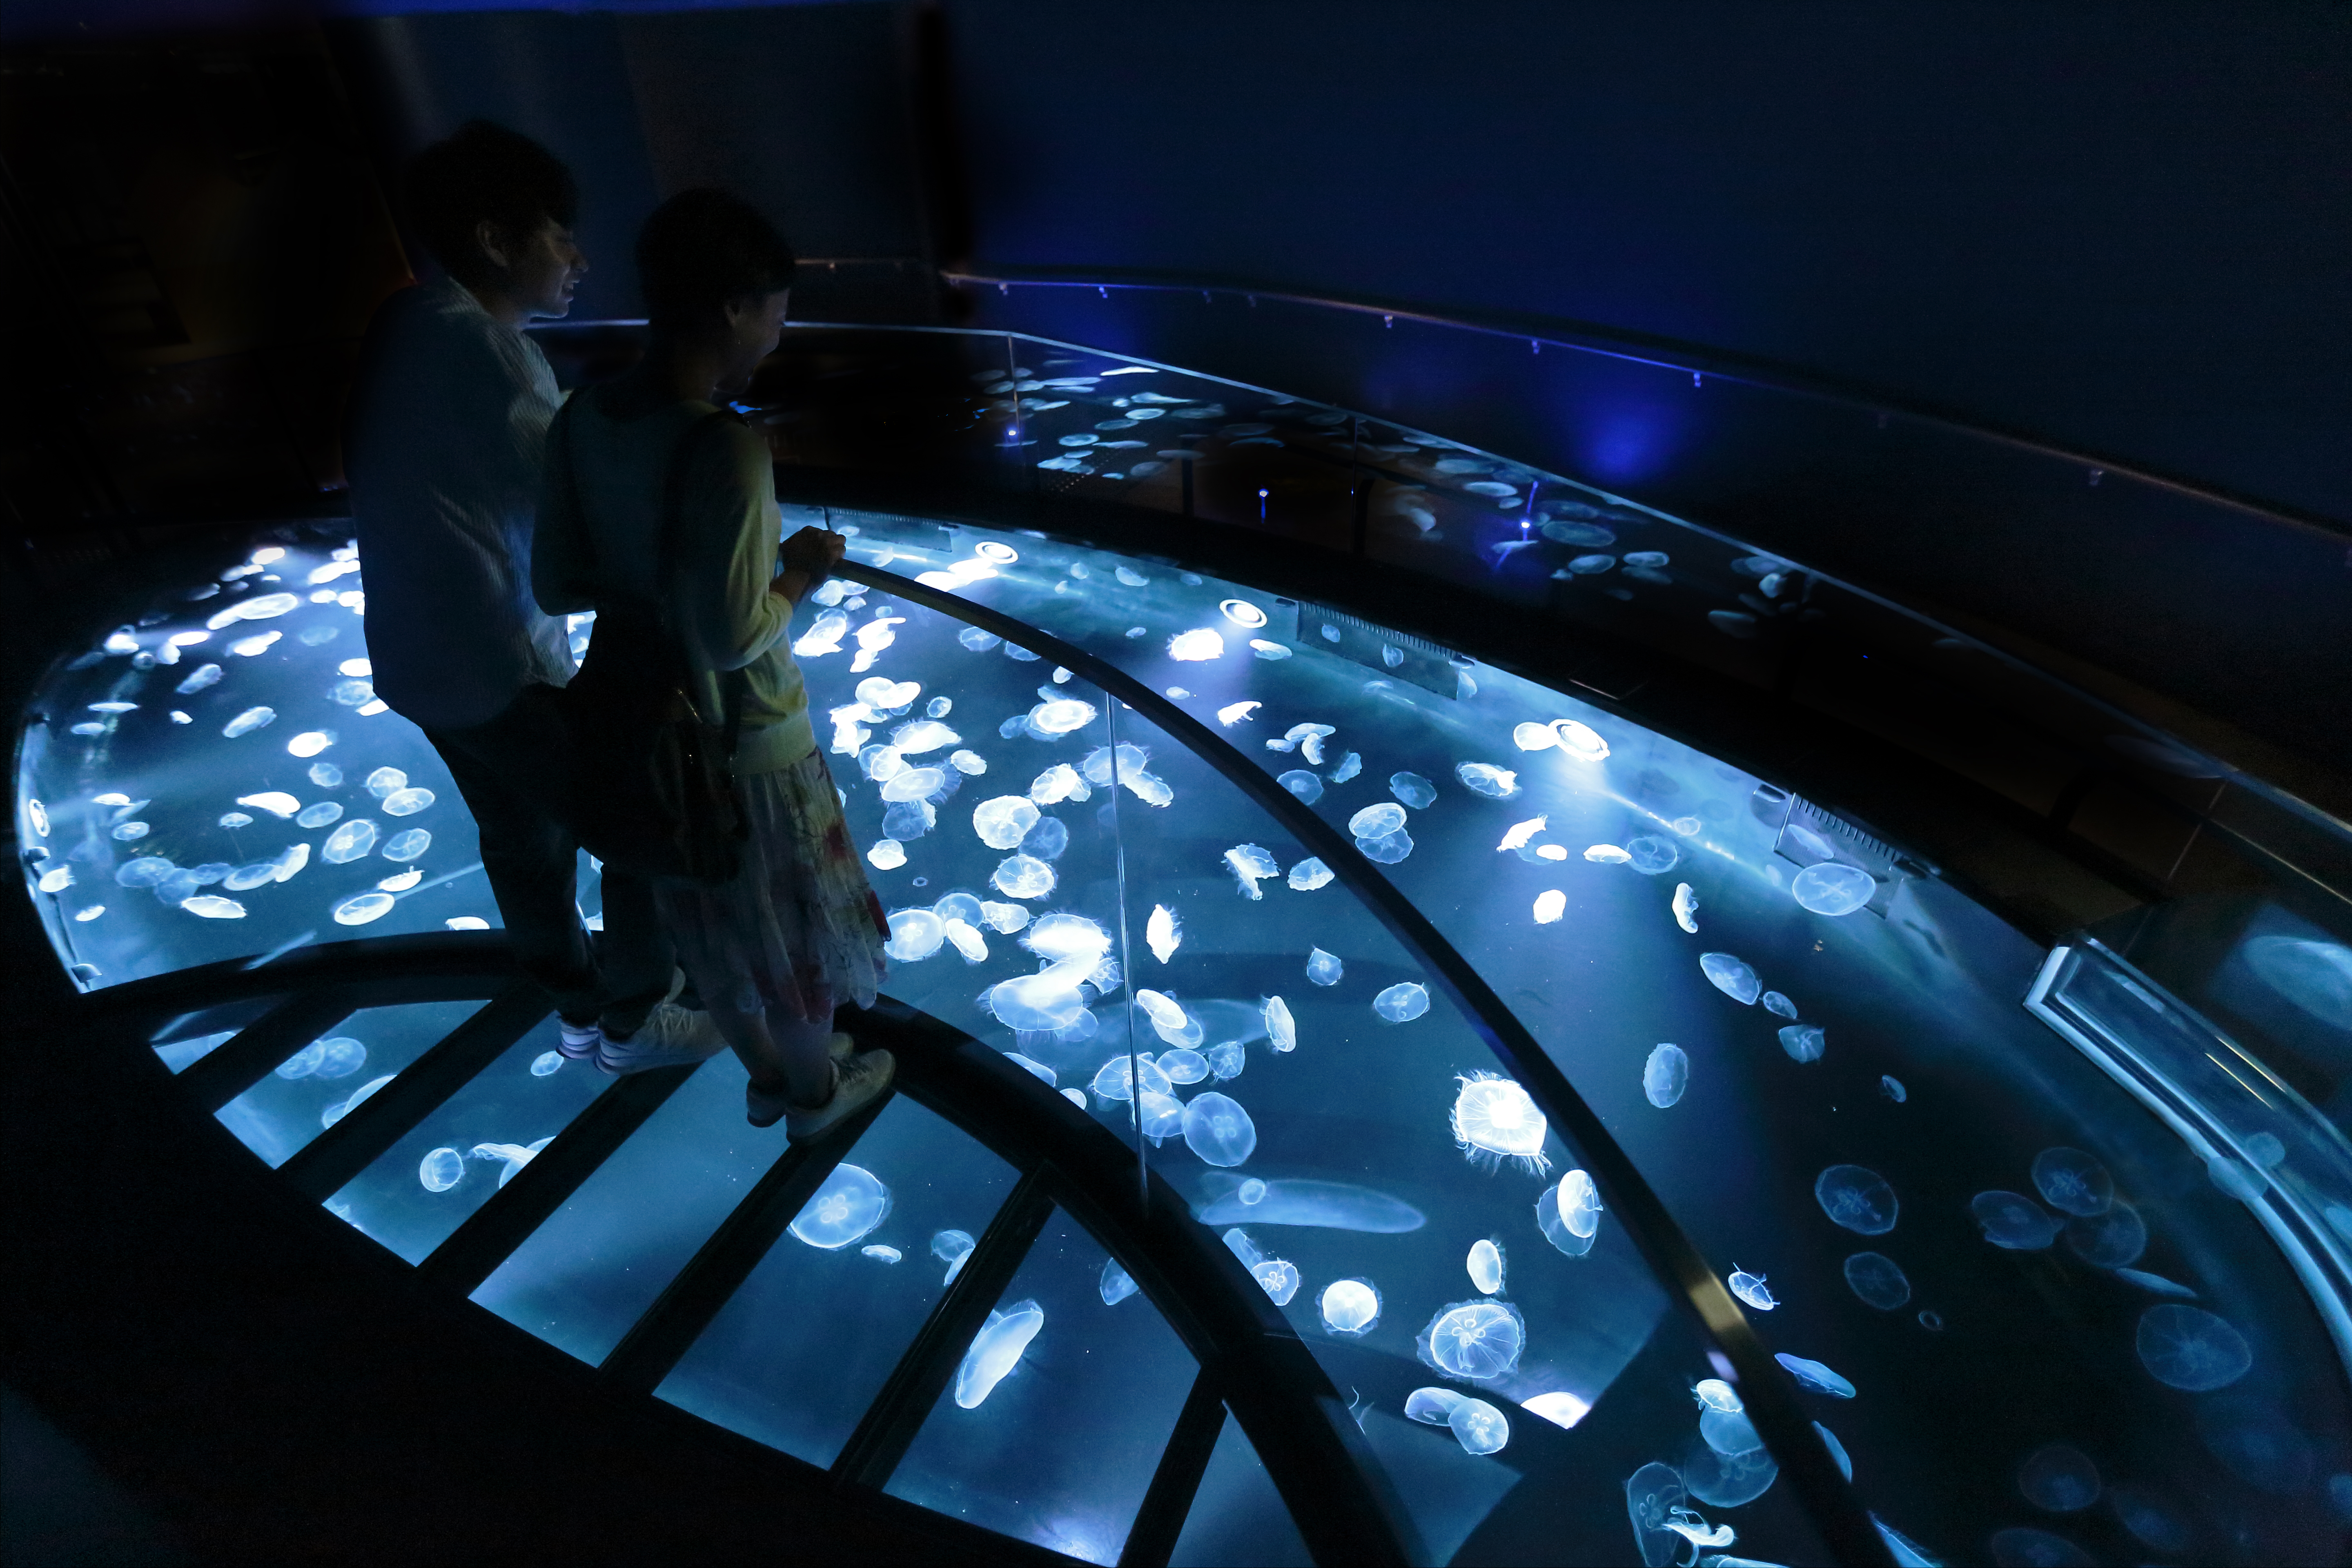 Picture of a place: Sumida Aquarium